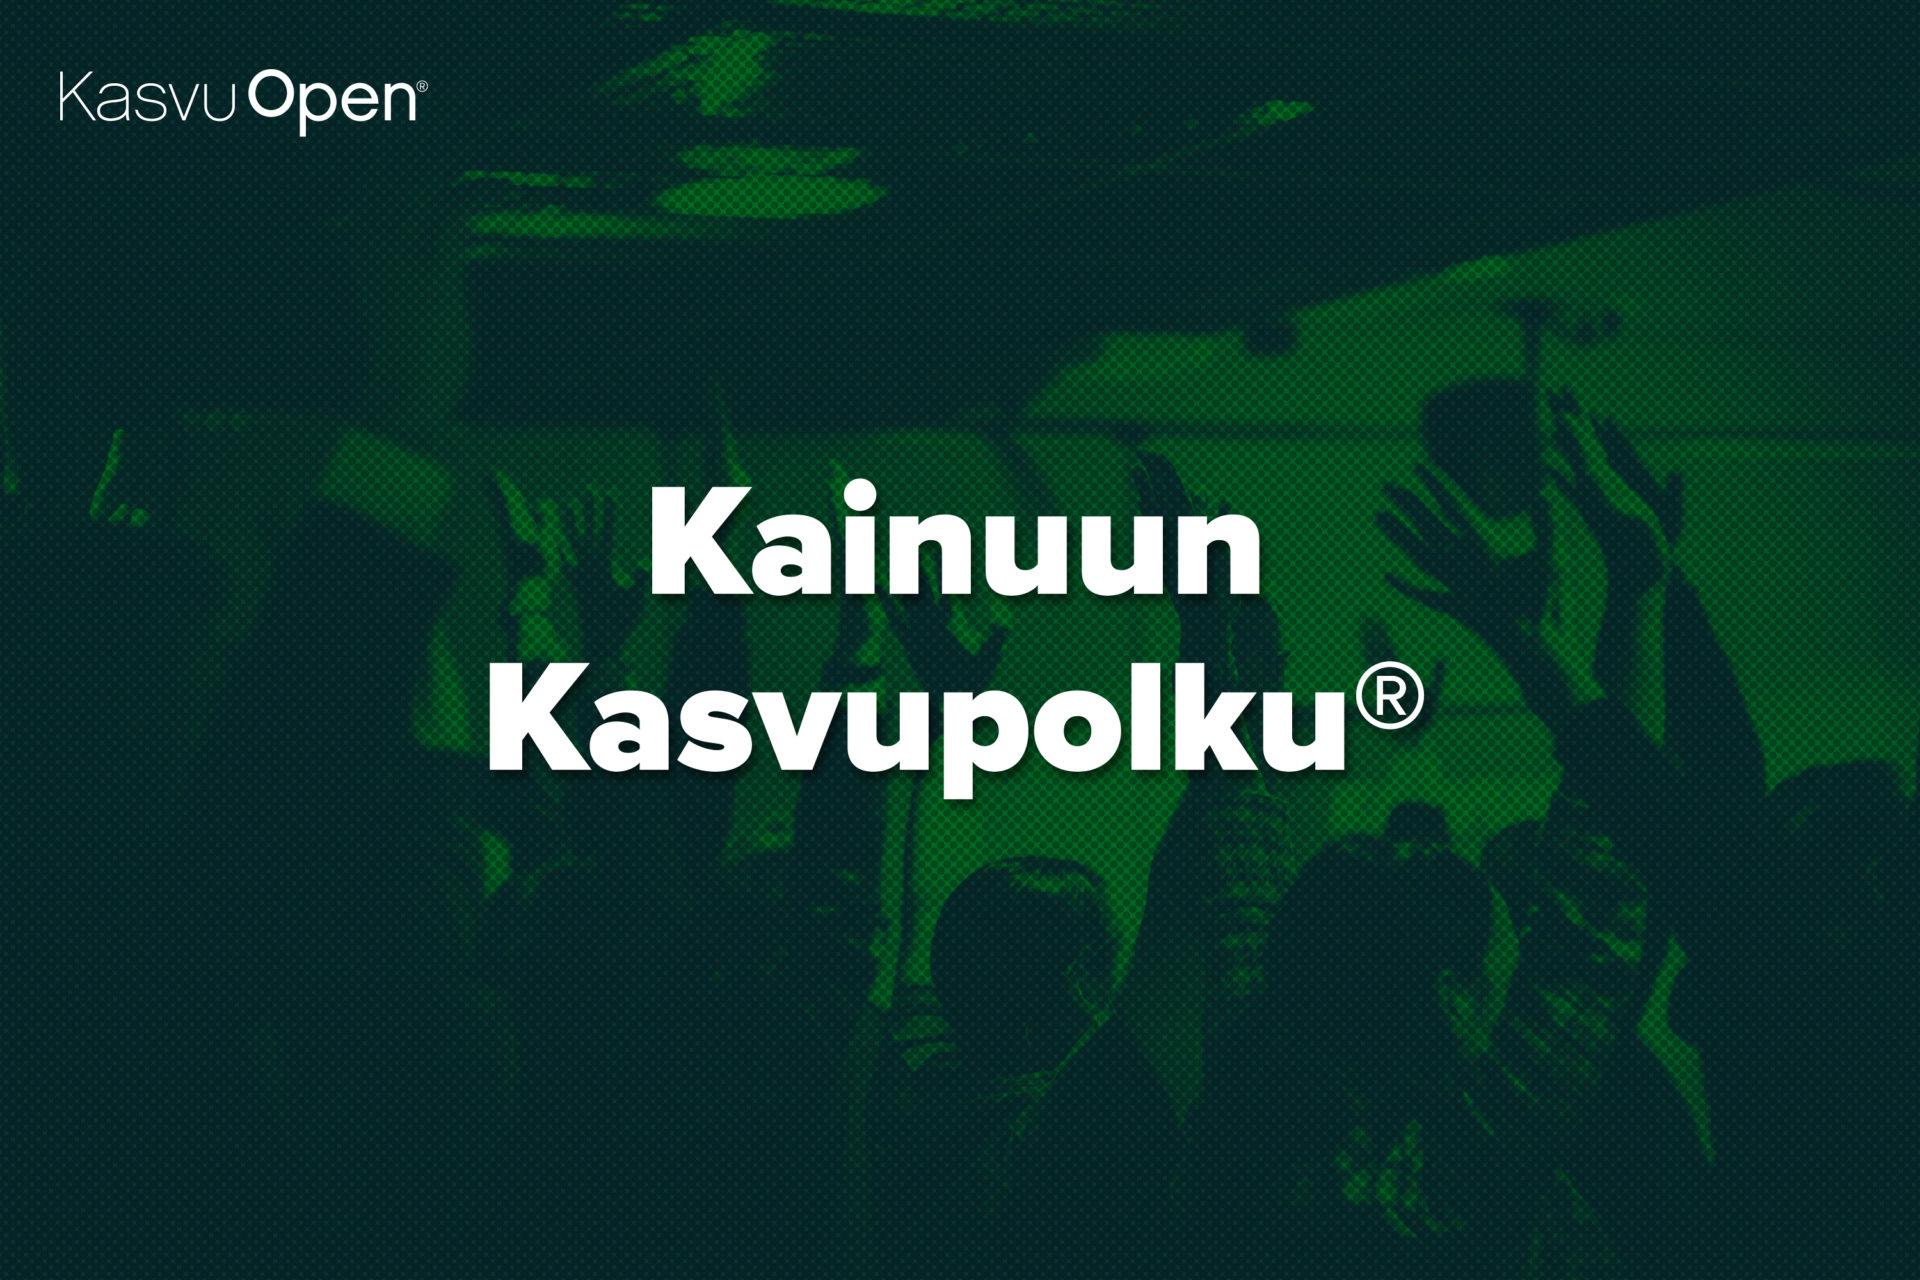 Kainuun Kasvupolku®: Potentiaalisimmat kasvuyritykset ovat Kajaanin  Jäteauto Oy ja Gr8 Escape Oy - Kasvu Open